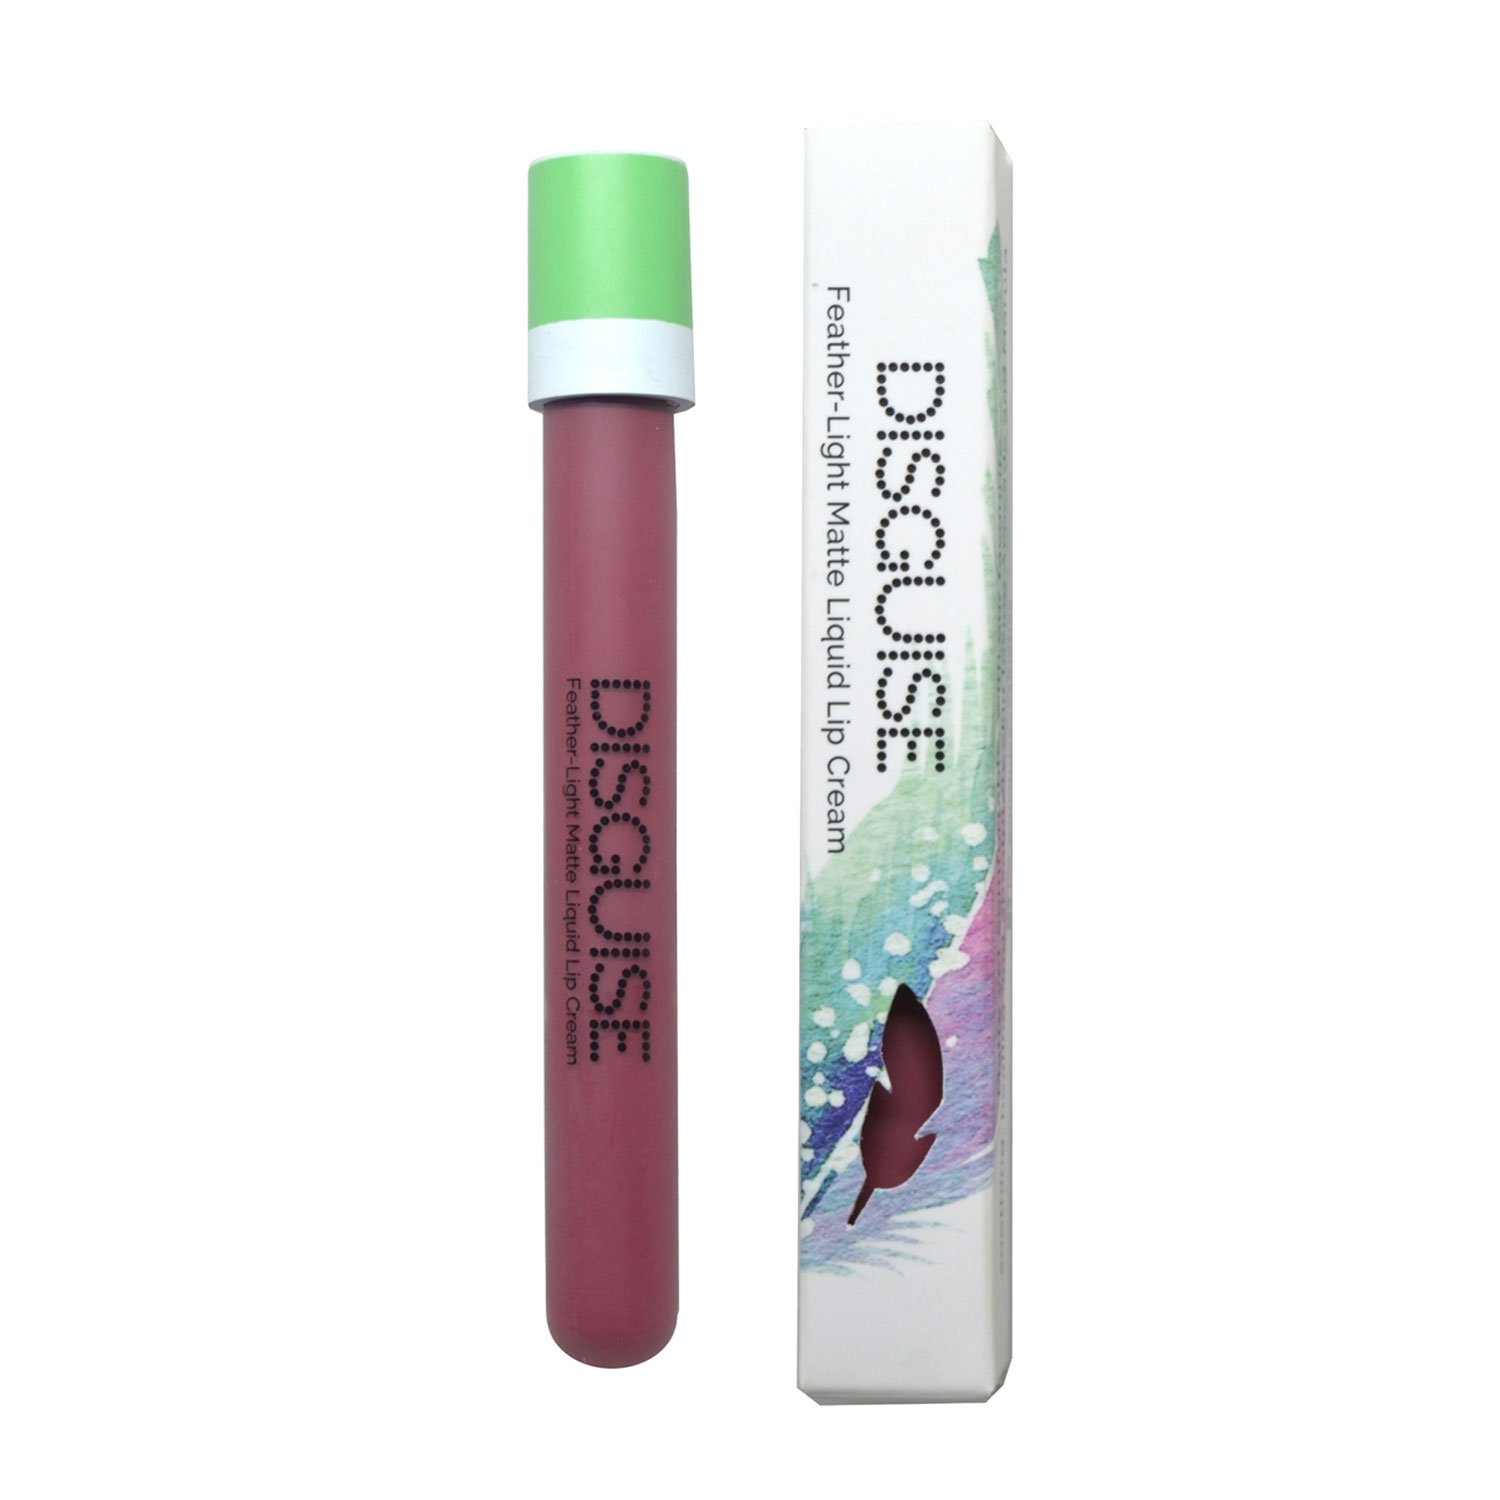 Disguise Cosmetics Feather-Light Matte Liquid Lip Cream, 6.8ml-32 Nostalgic Rose